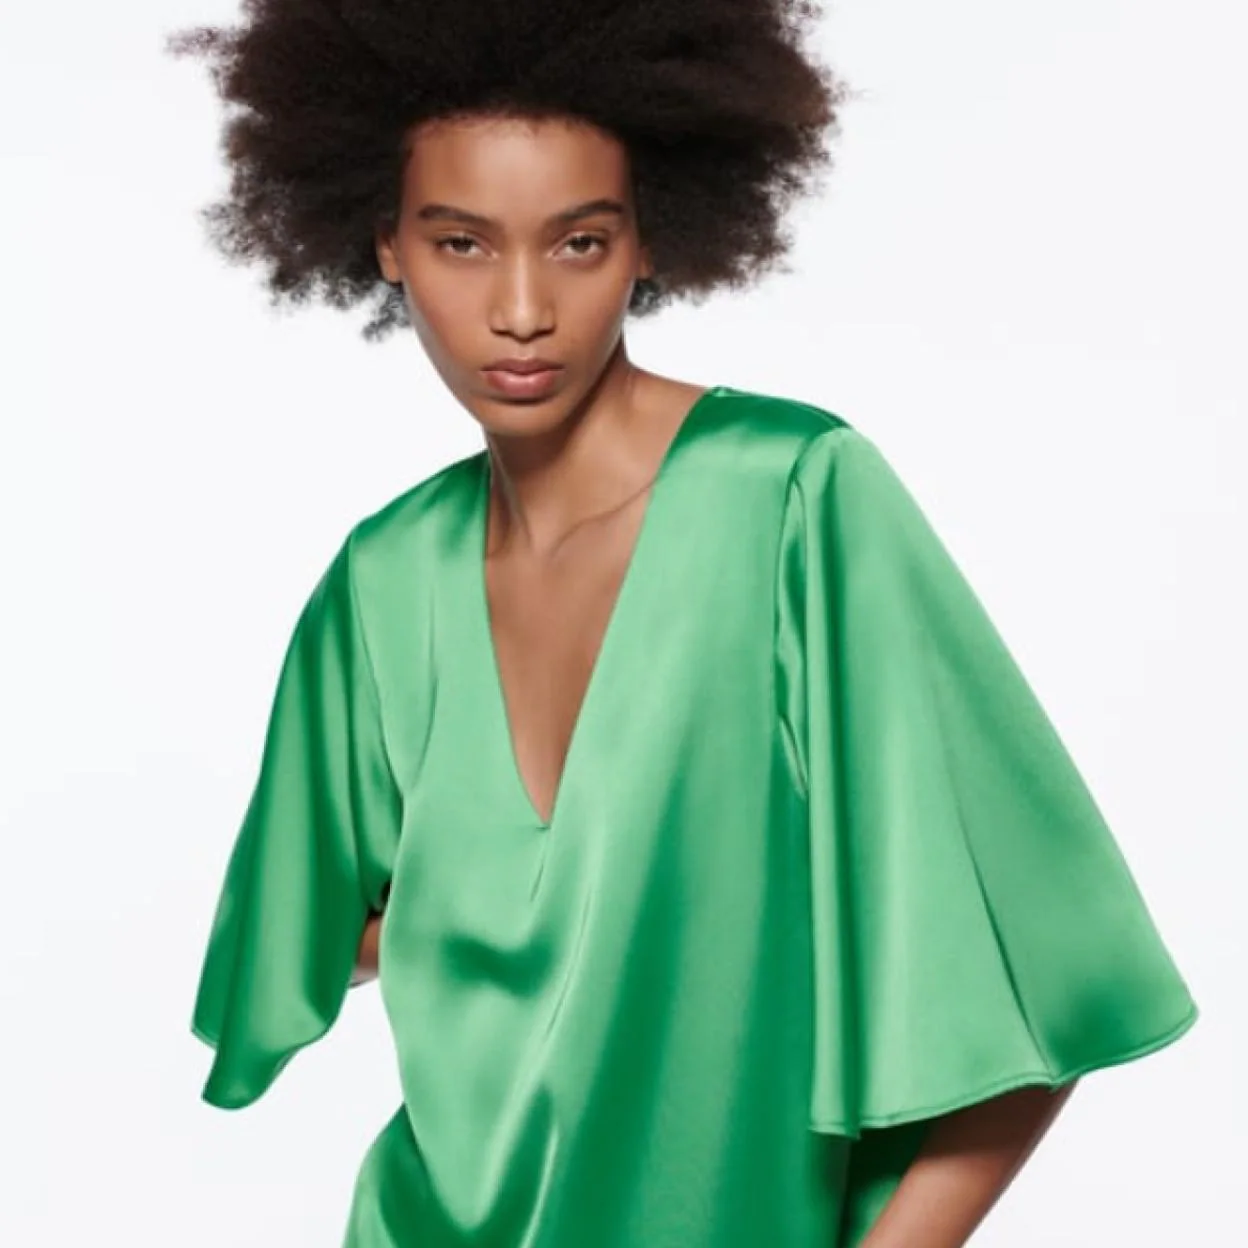 Zara repite con su vestido túnica verde que triunfó en los looks de invitada de 2021 y que y rejuvenece en todos los tipos de cuerpo | Mujer Hoy